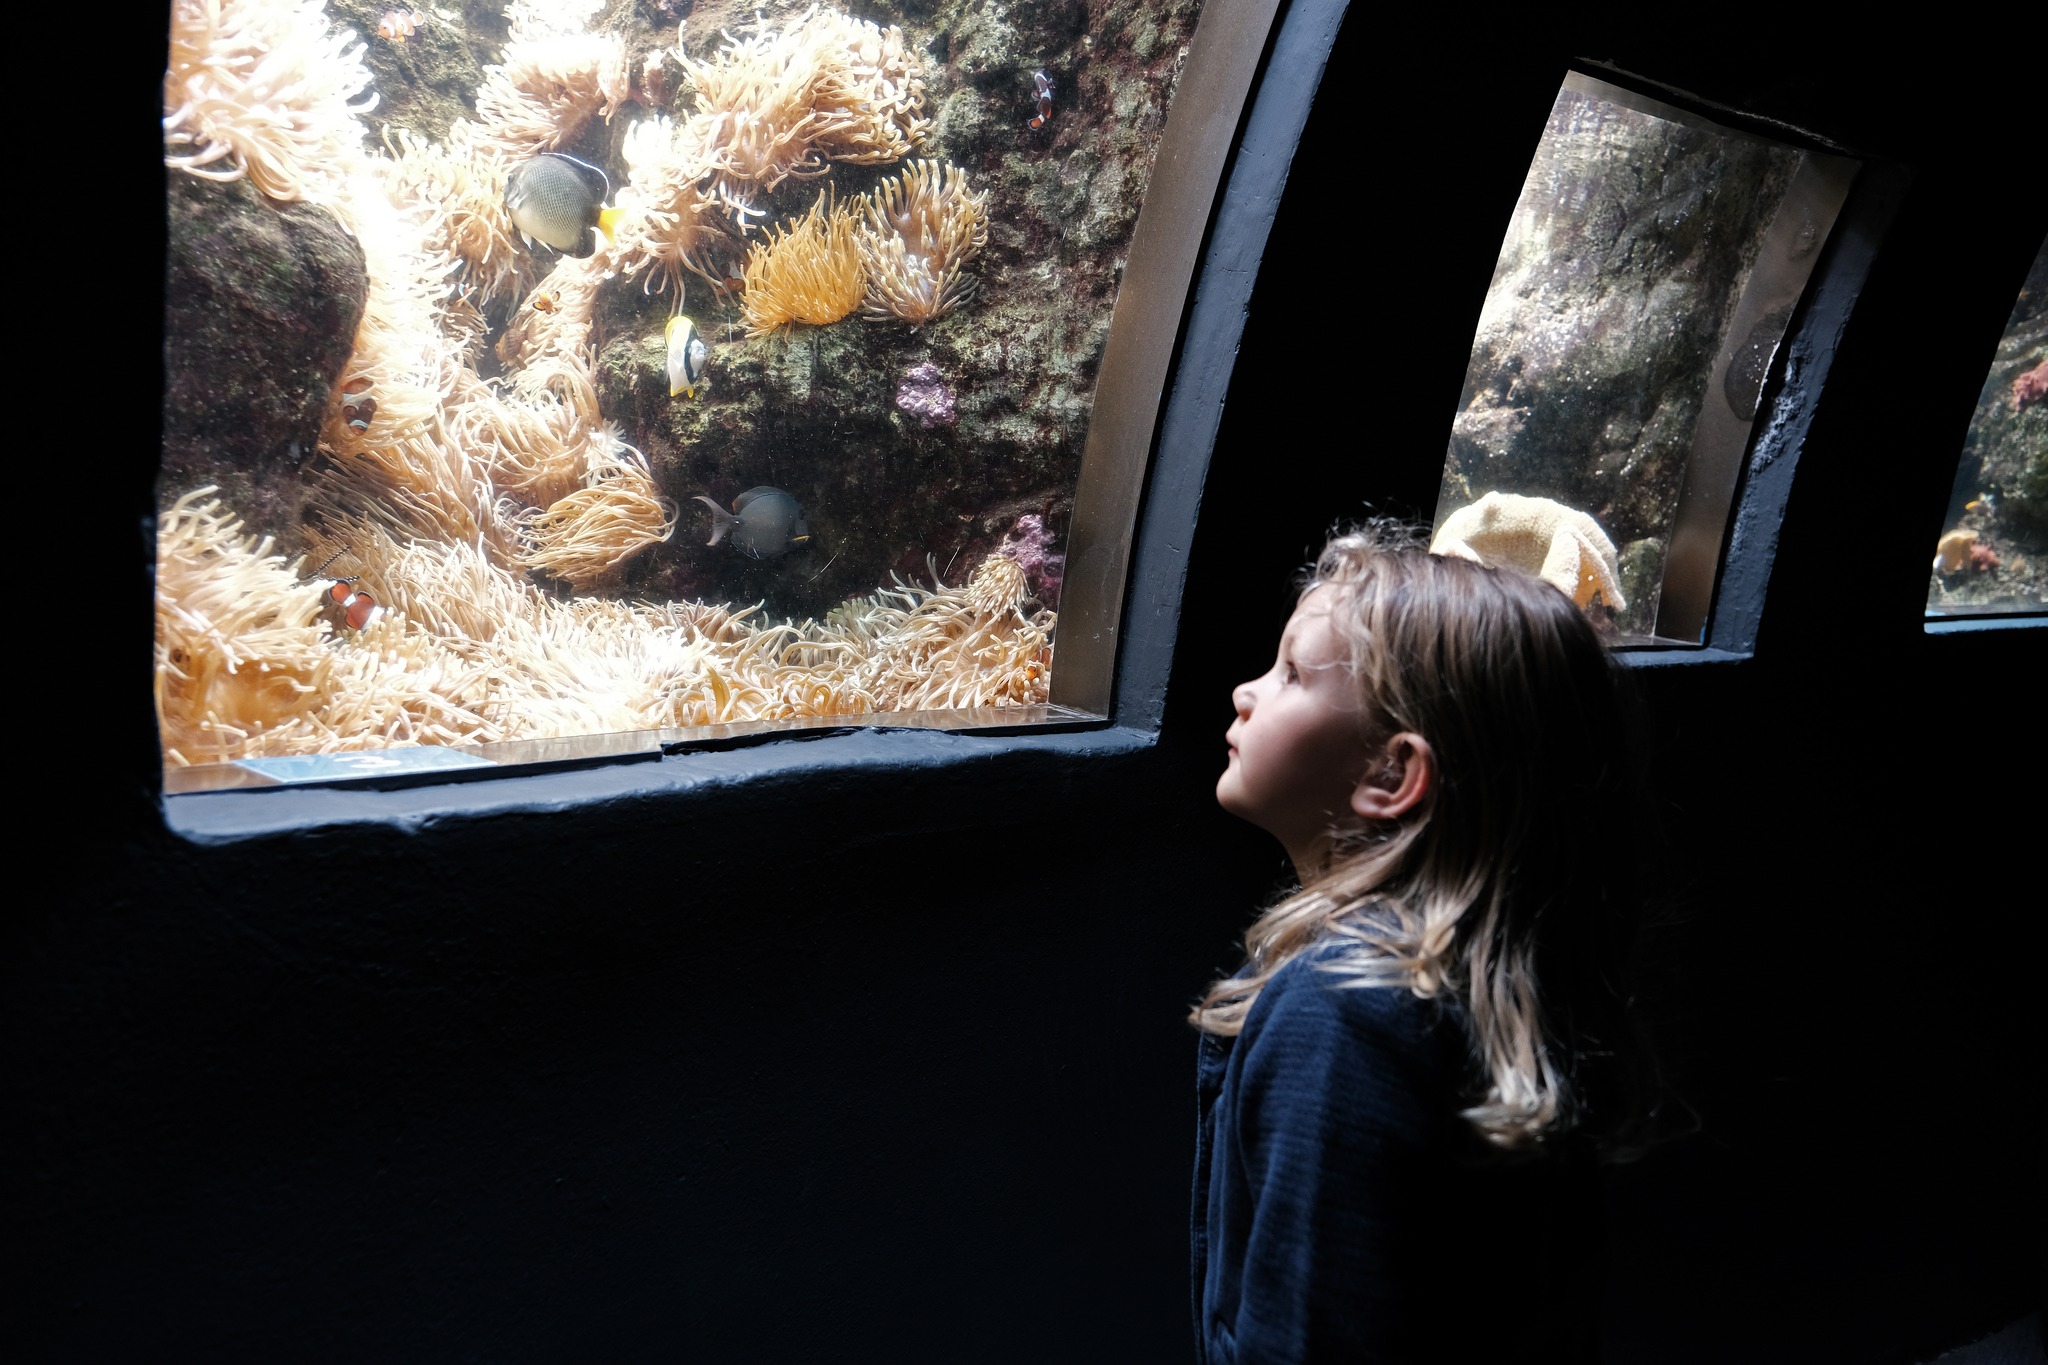 Paris Aquarium – Cineaqua Paris